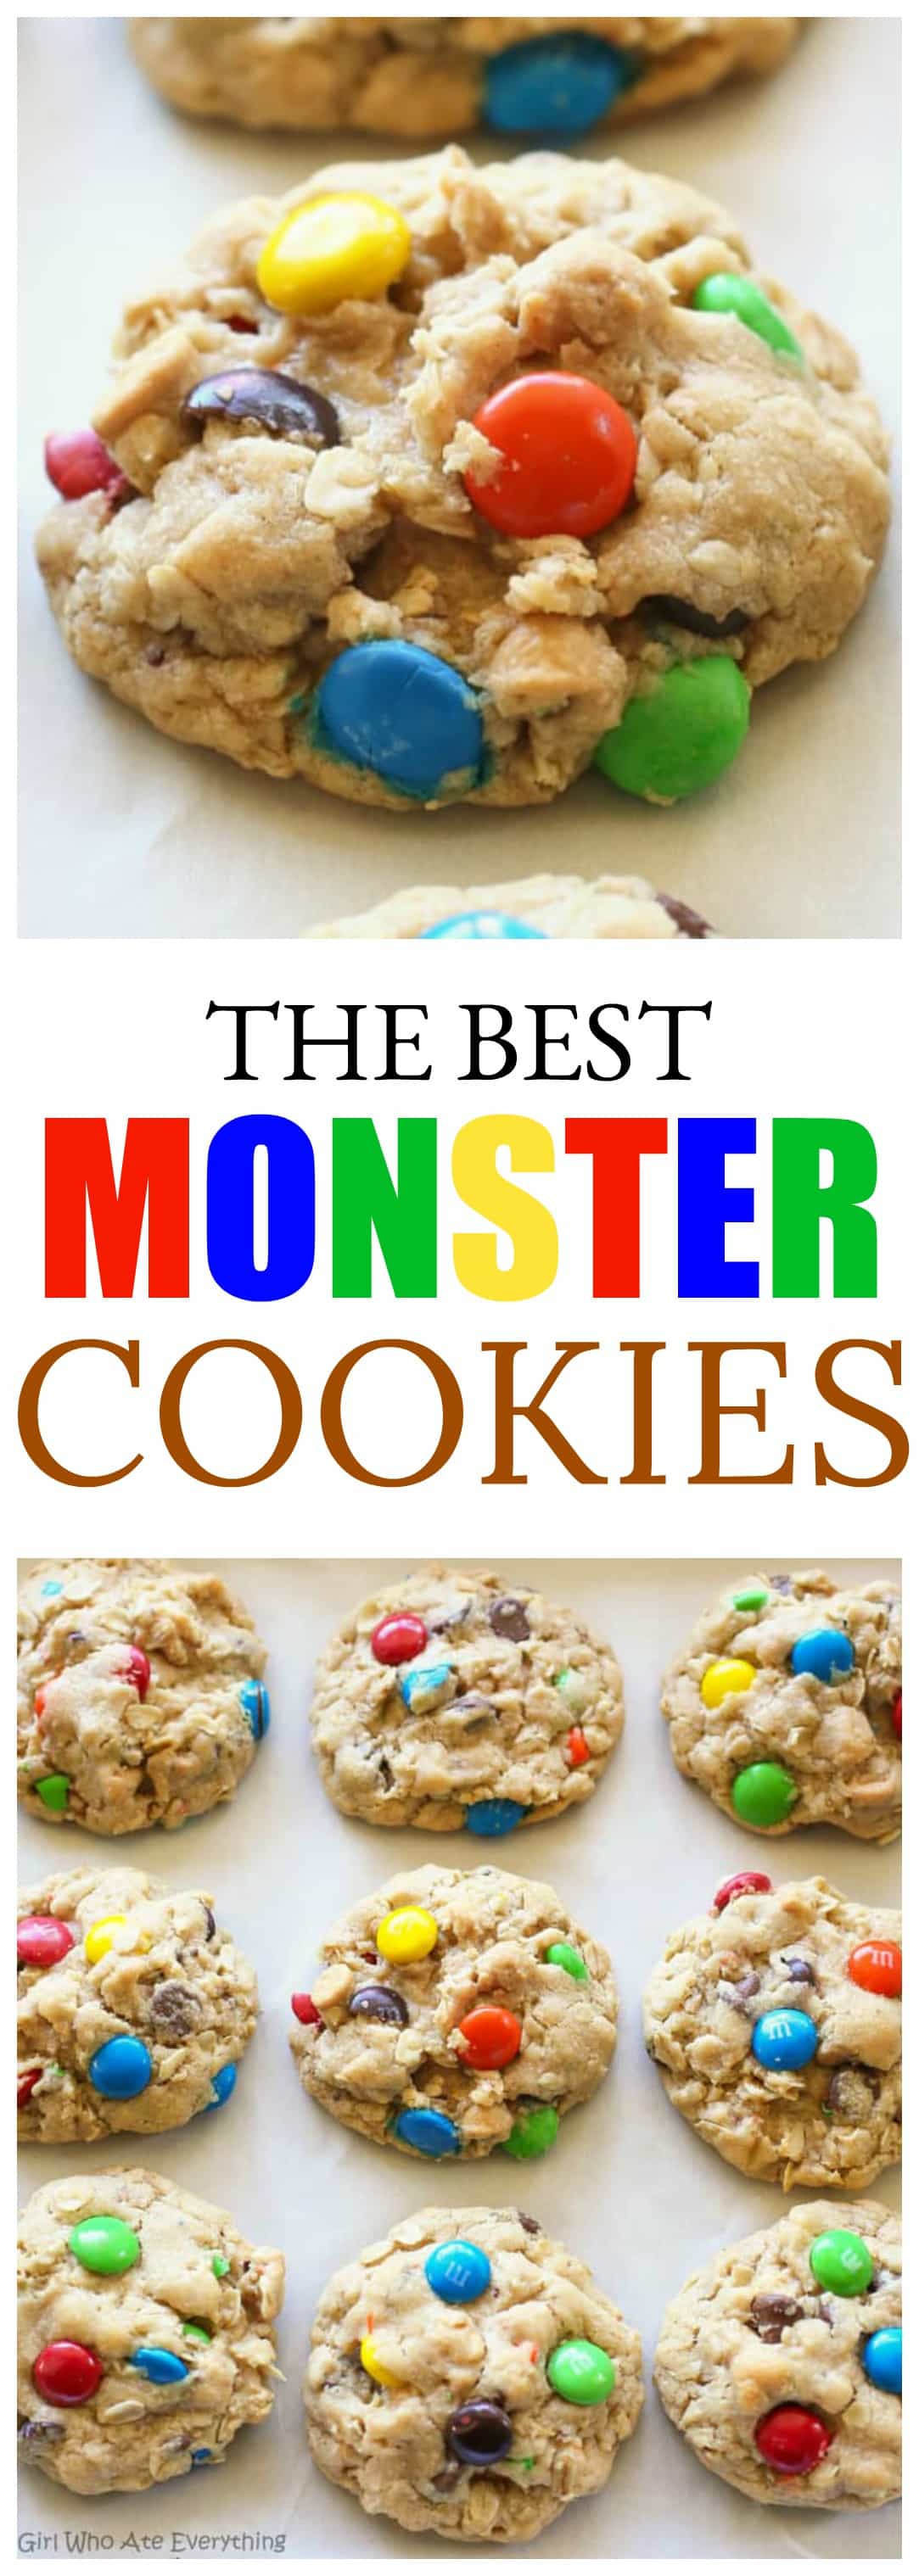 Monster Cookies - esses biscoitos grossos e macios são recheados com manteiga de amendoim, aveia, gotas de chocolate e M&Ms.  #monster #cookies #peanutbutter #receita #aveia #chewy